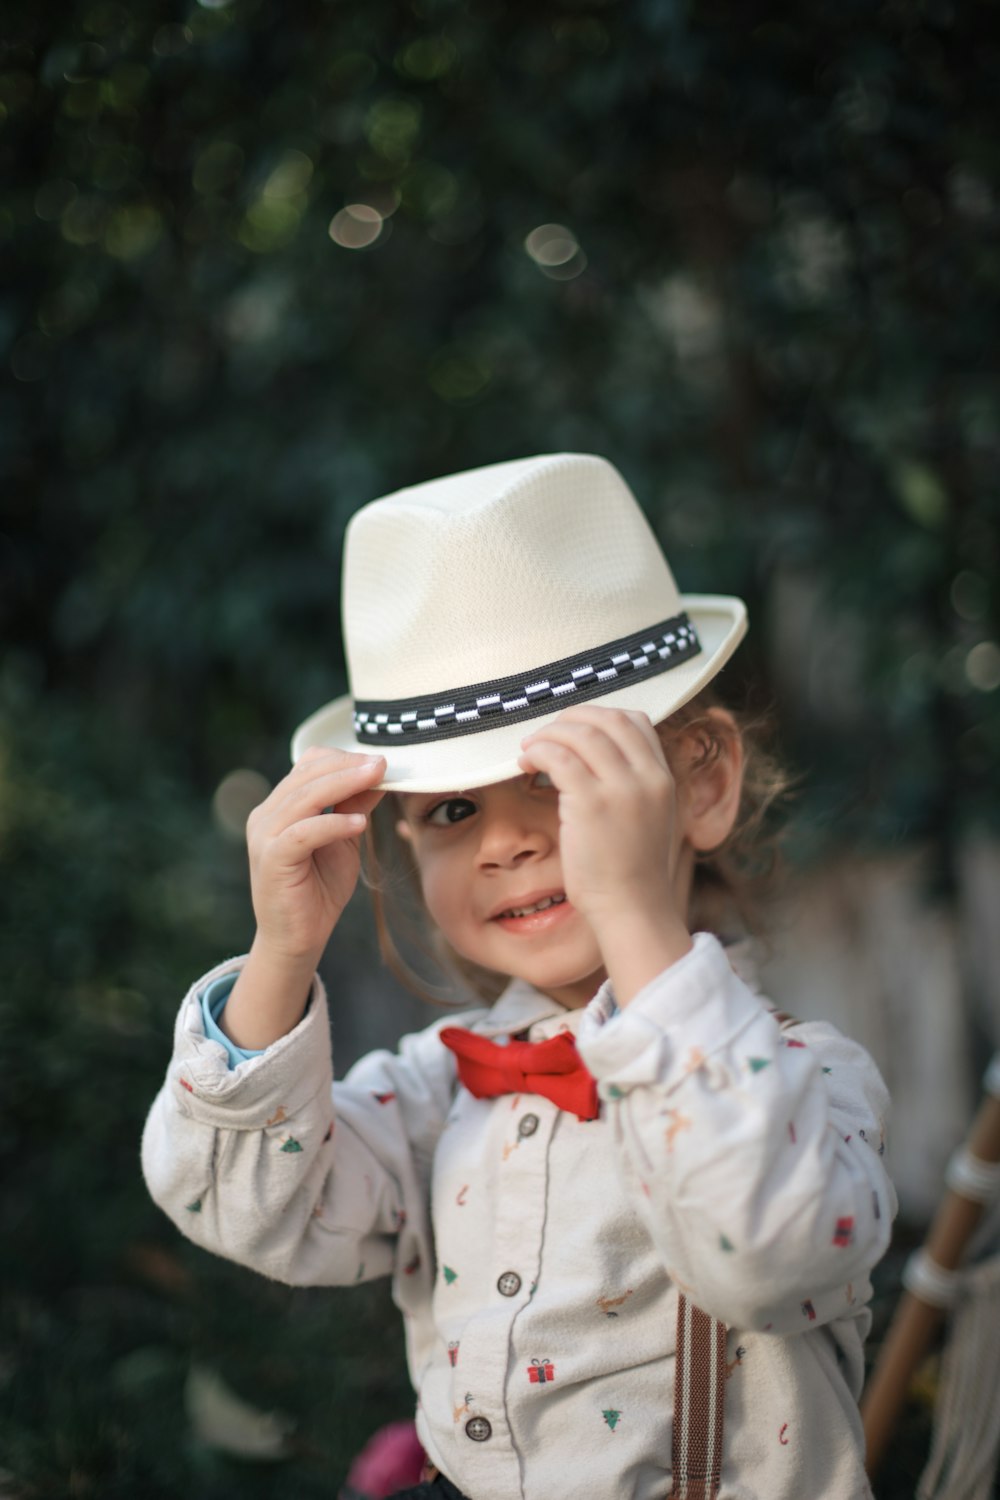 흰 모자와 나비 넥타이를 매고 있는 어린 소녀